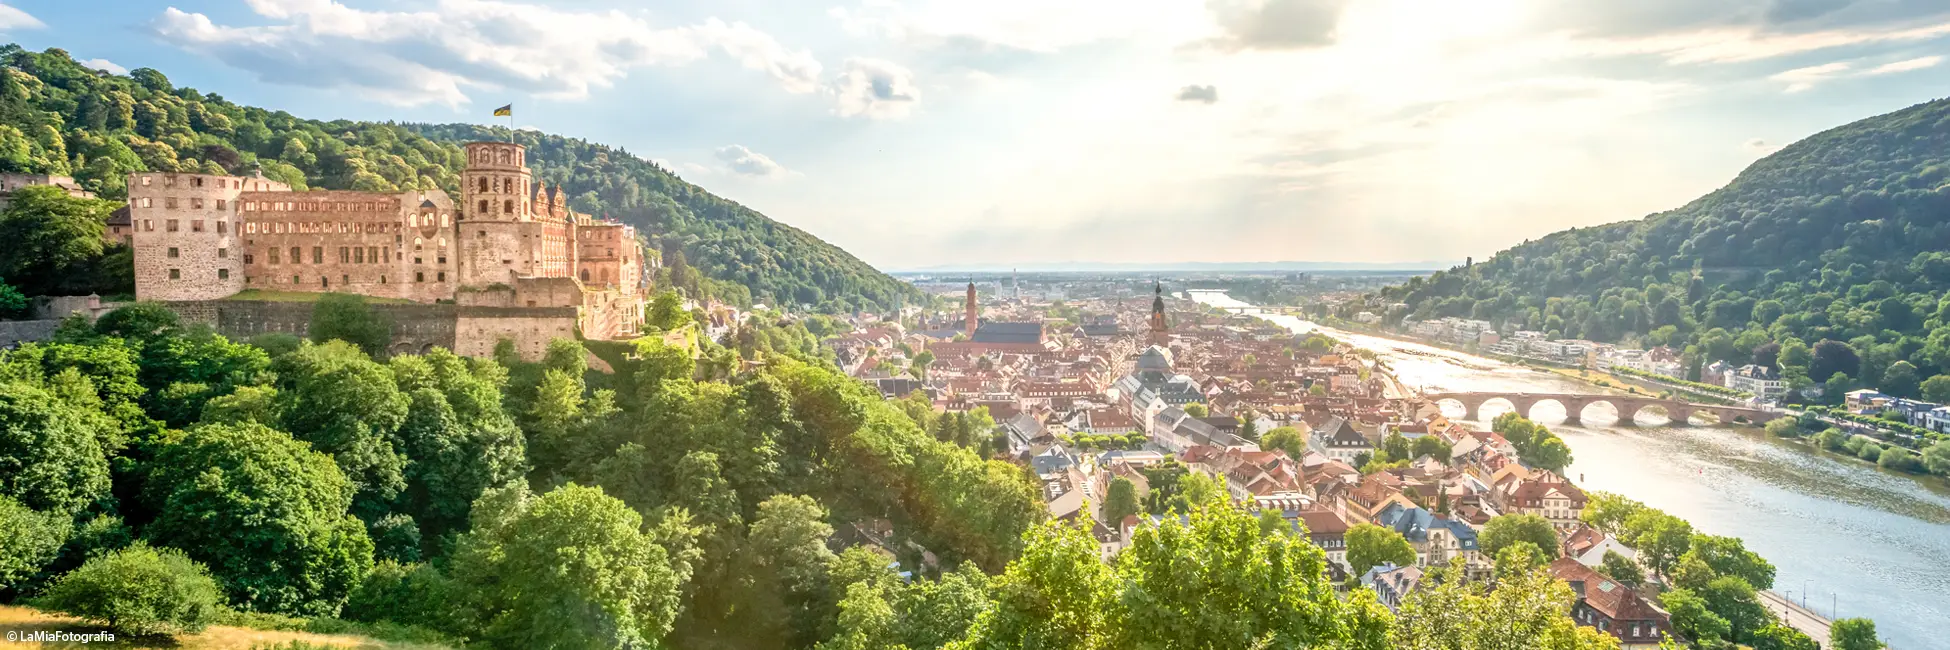 Heidelberg, ville rhénane en Allemagne